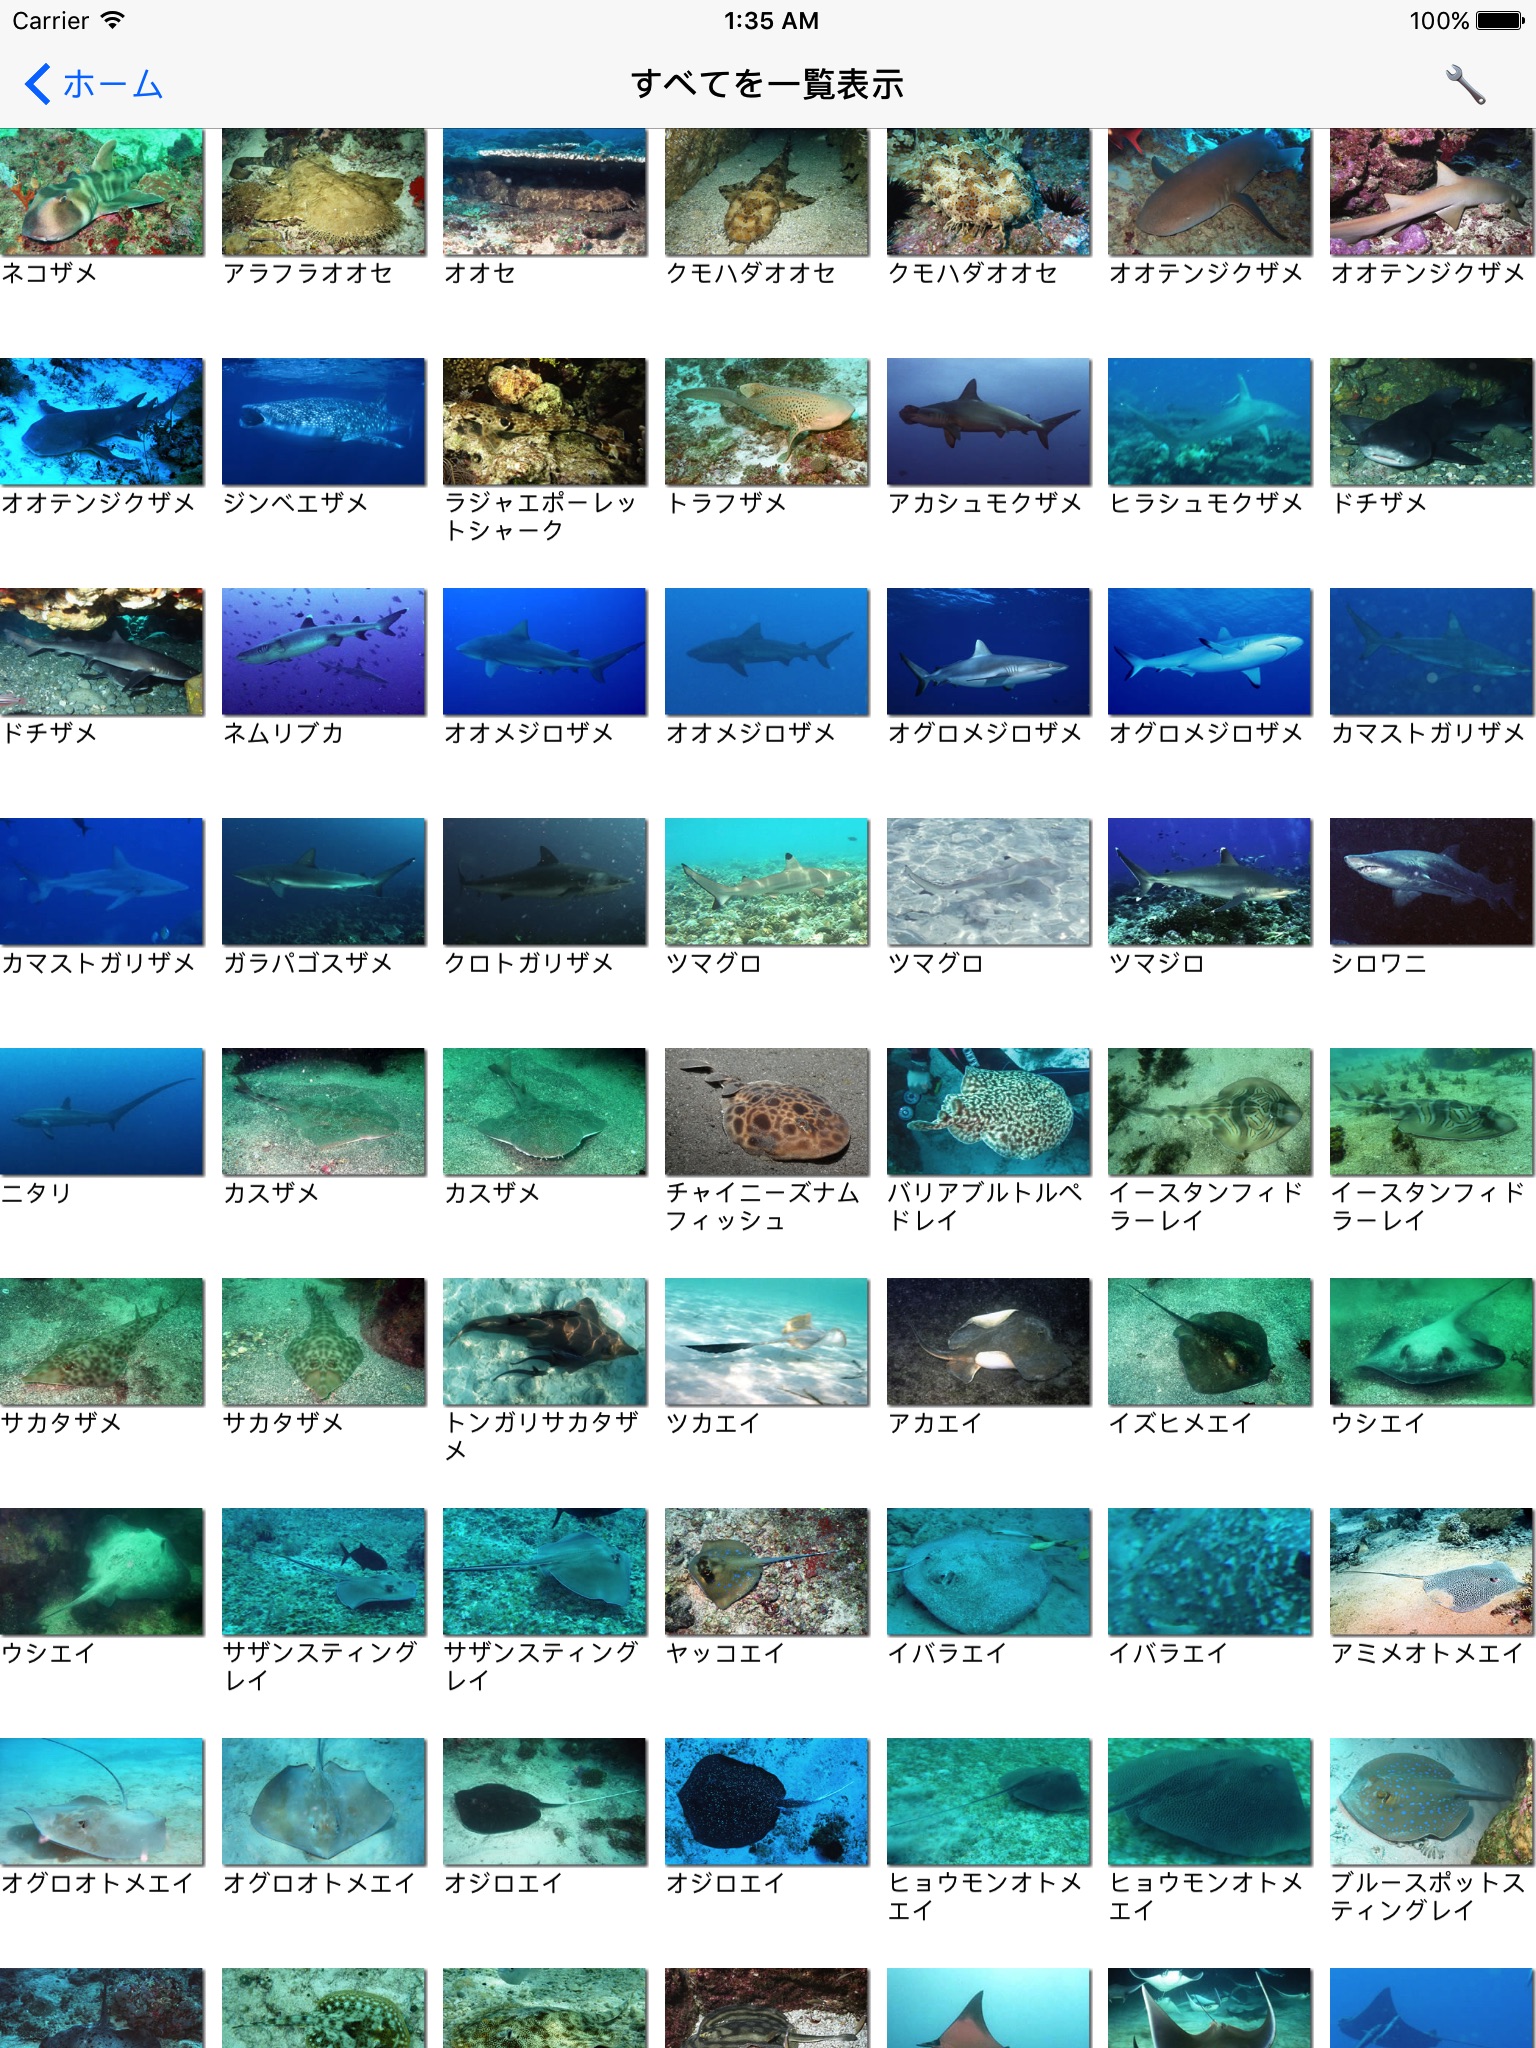 南国魚ガイド(1700種類の魚図鑑) screenshot 2